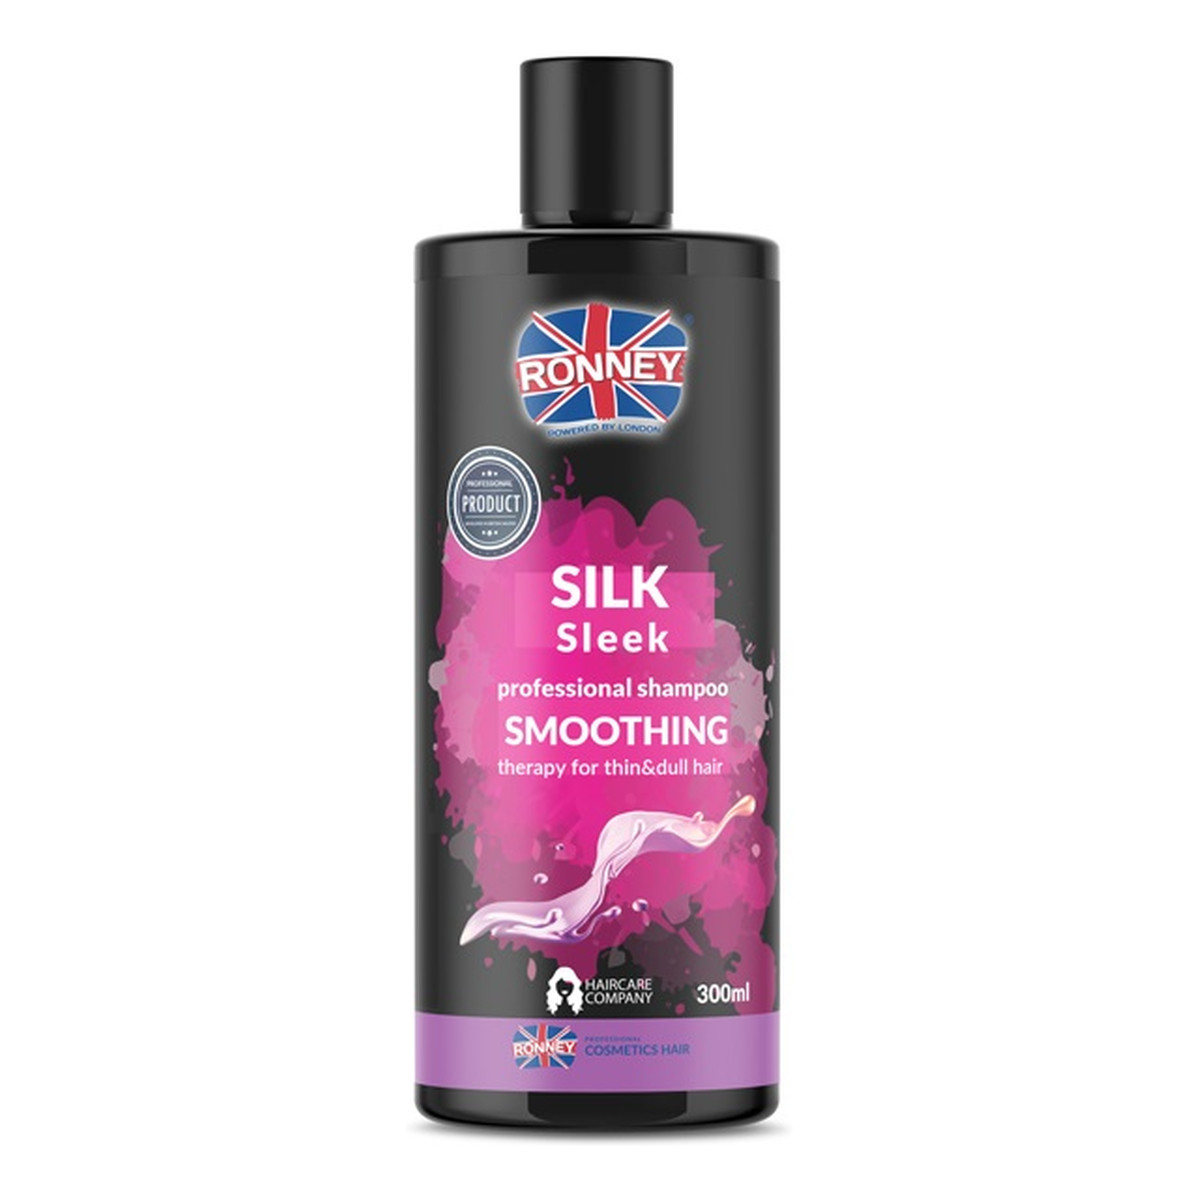 Ronney Silk sleek professional shampoo smoothing wygładzający szampon do włosów cienkich i matowych 300ml